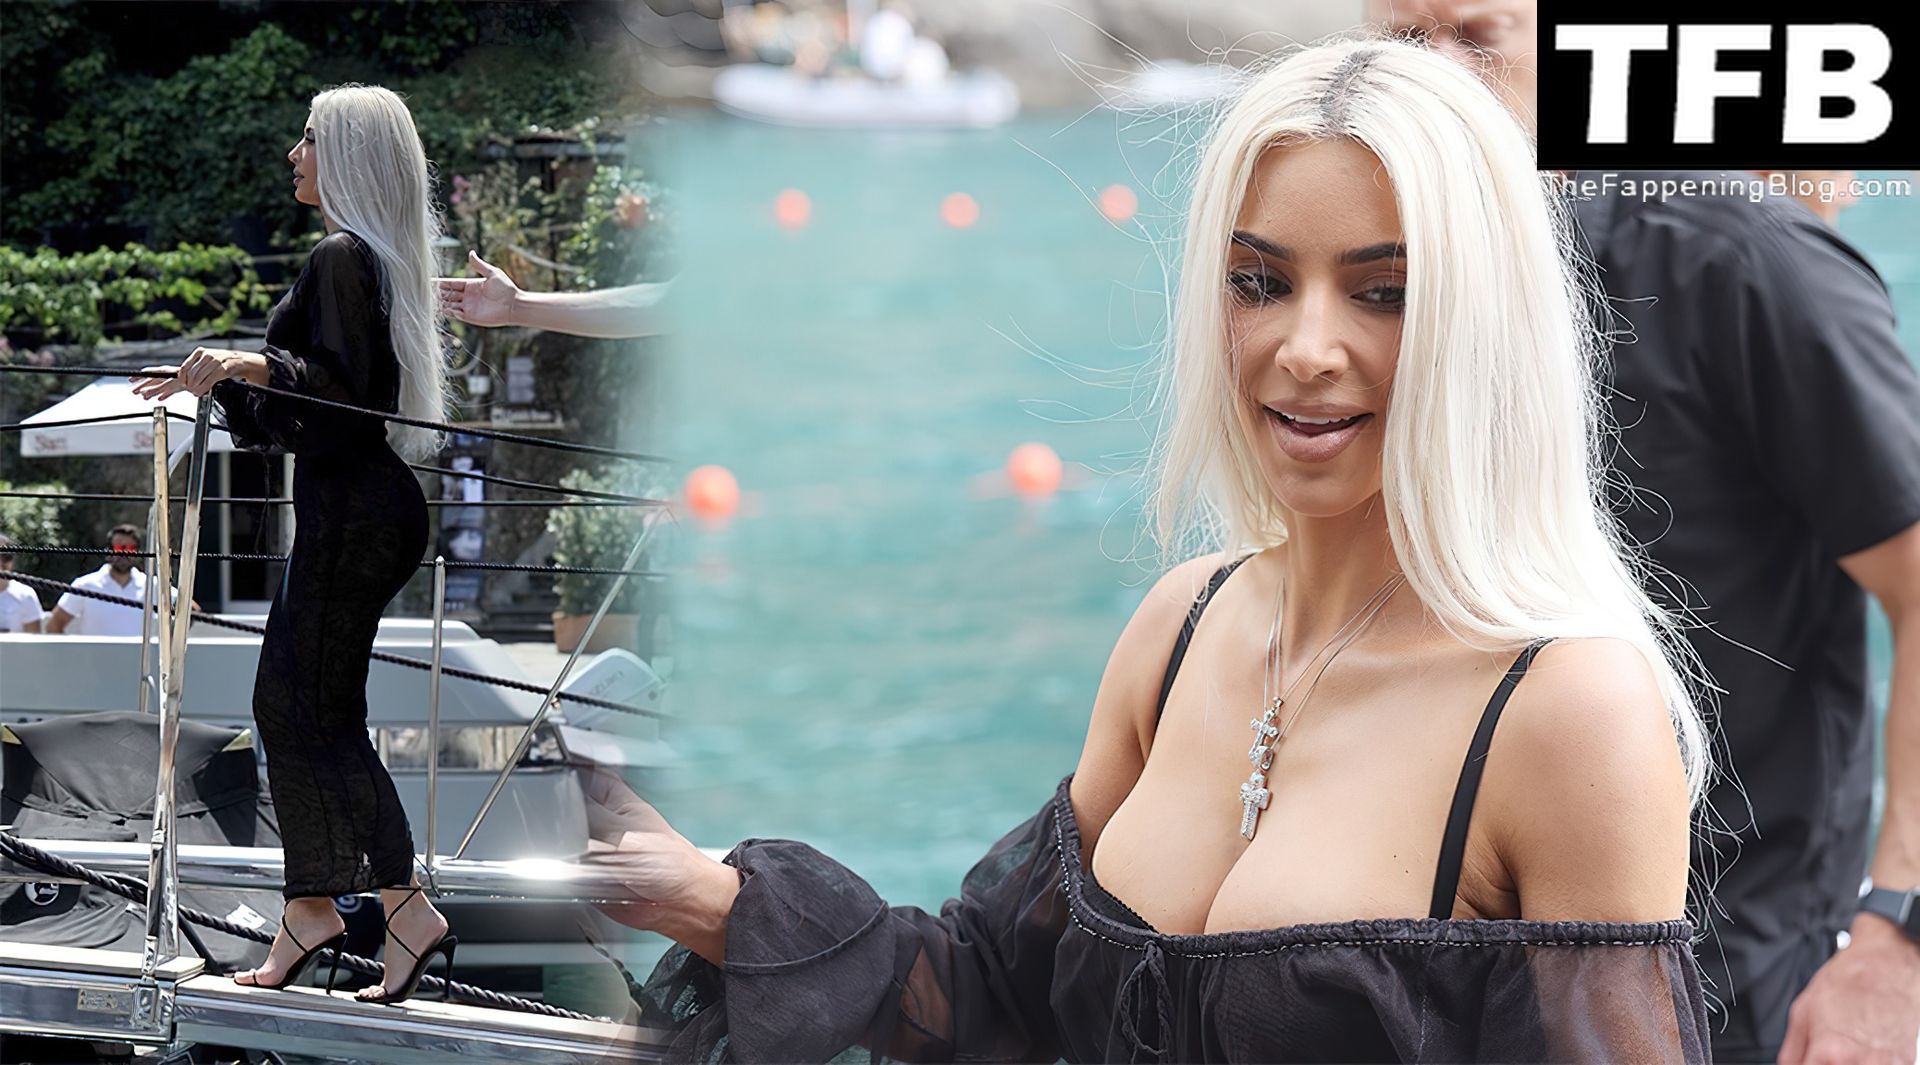 Kim-Kardashian-Sexy-The-Fappening-Blog-3-2.jpg